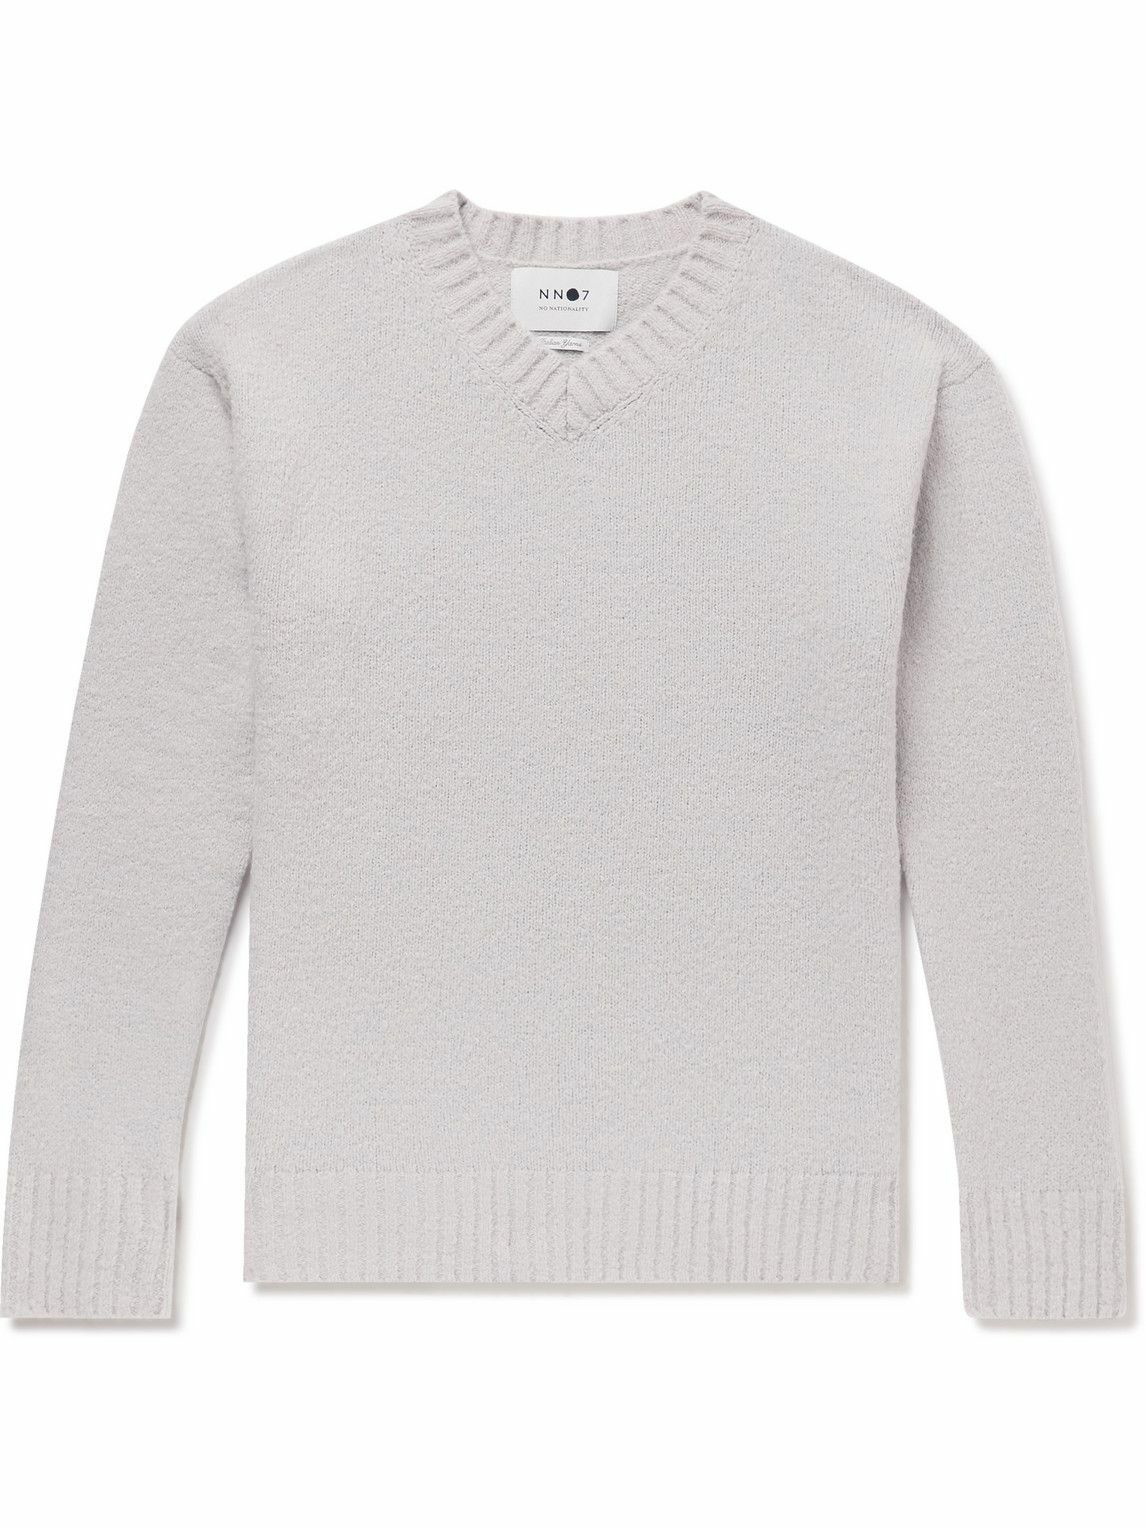 NN07 - Grayson Knitted Sweater - Gray NN07